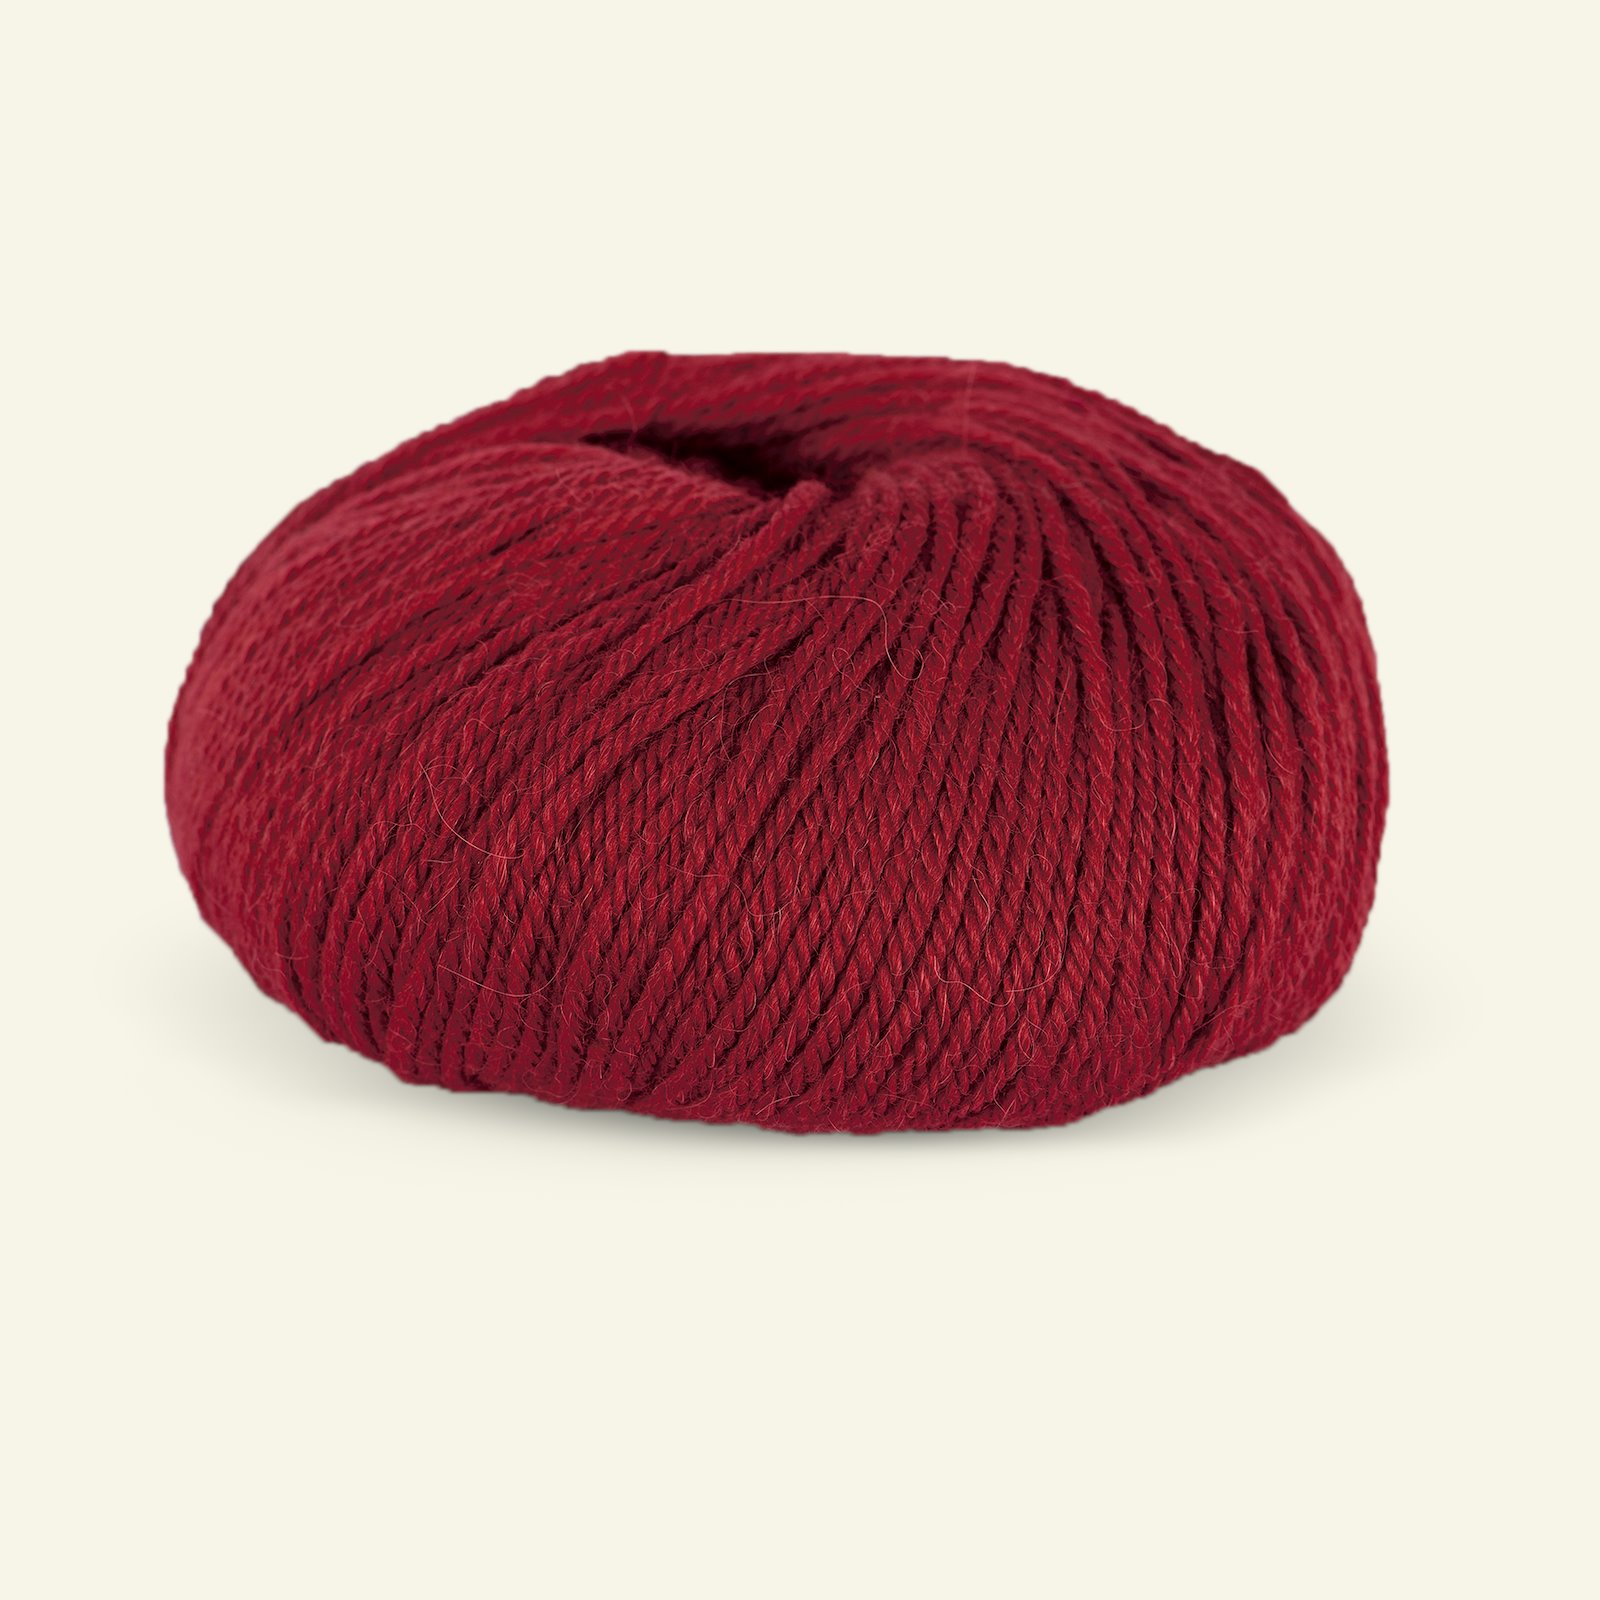 Du Store Alpakka, alpaca merino mixed yarn "Sterk", dark red (819) 90000662_pack_b